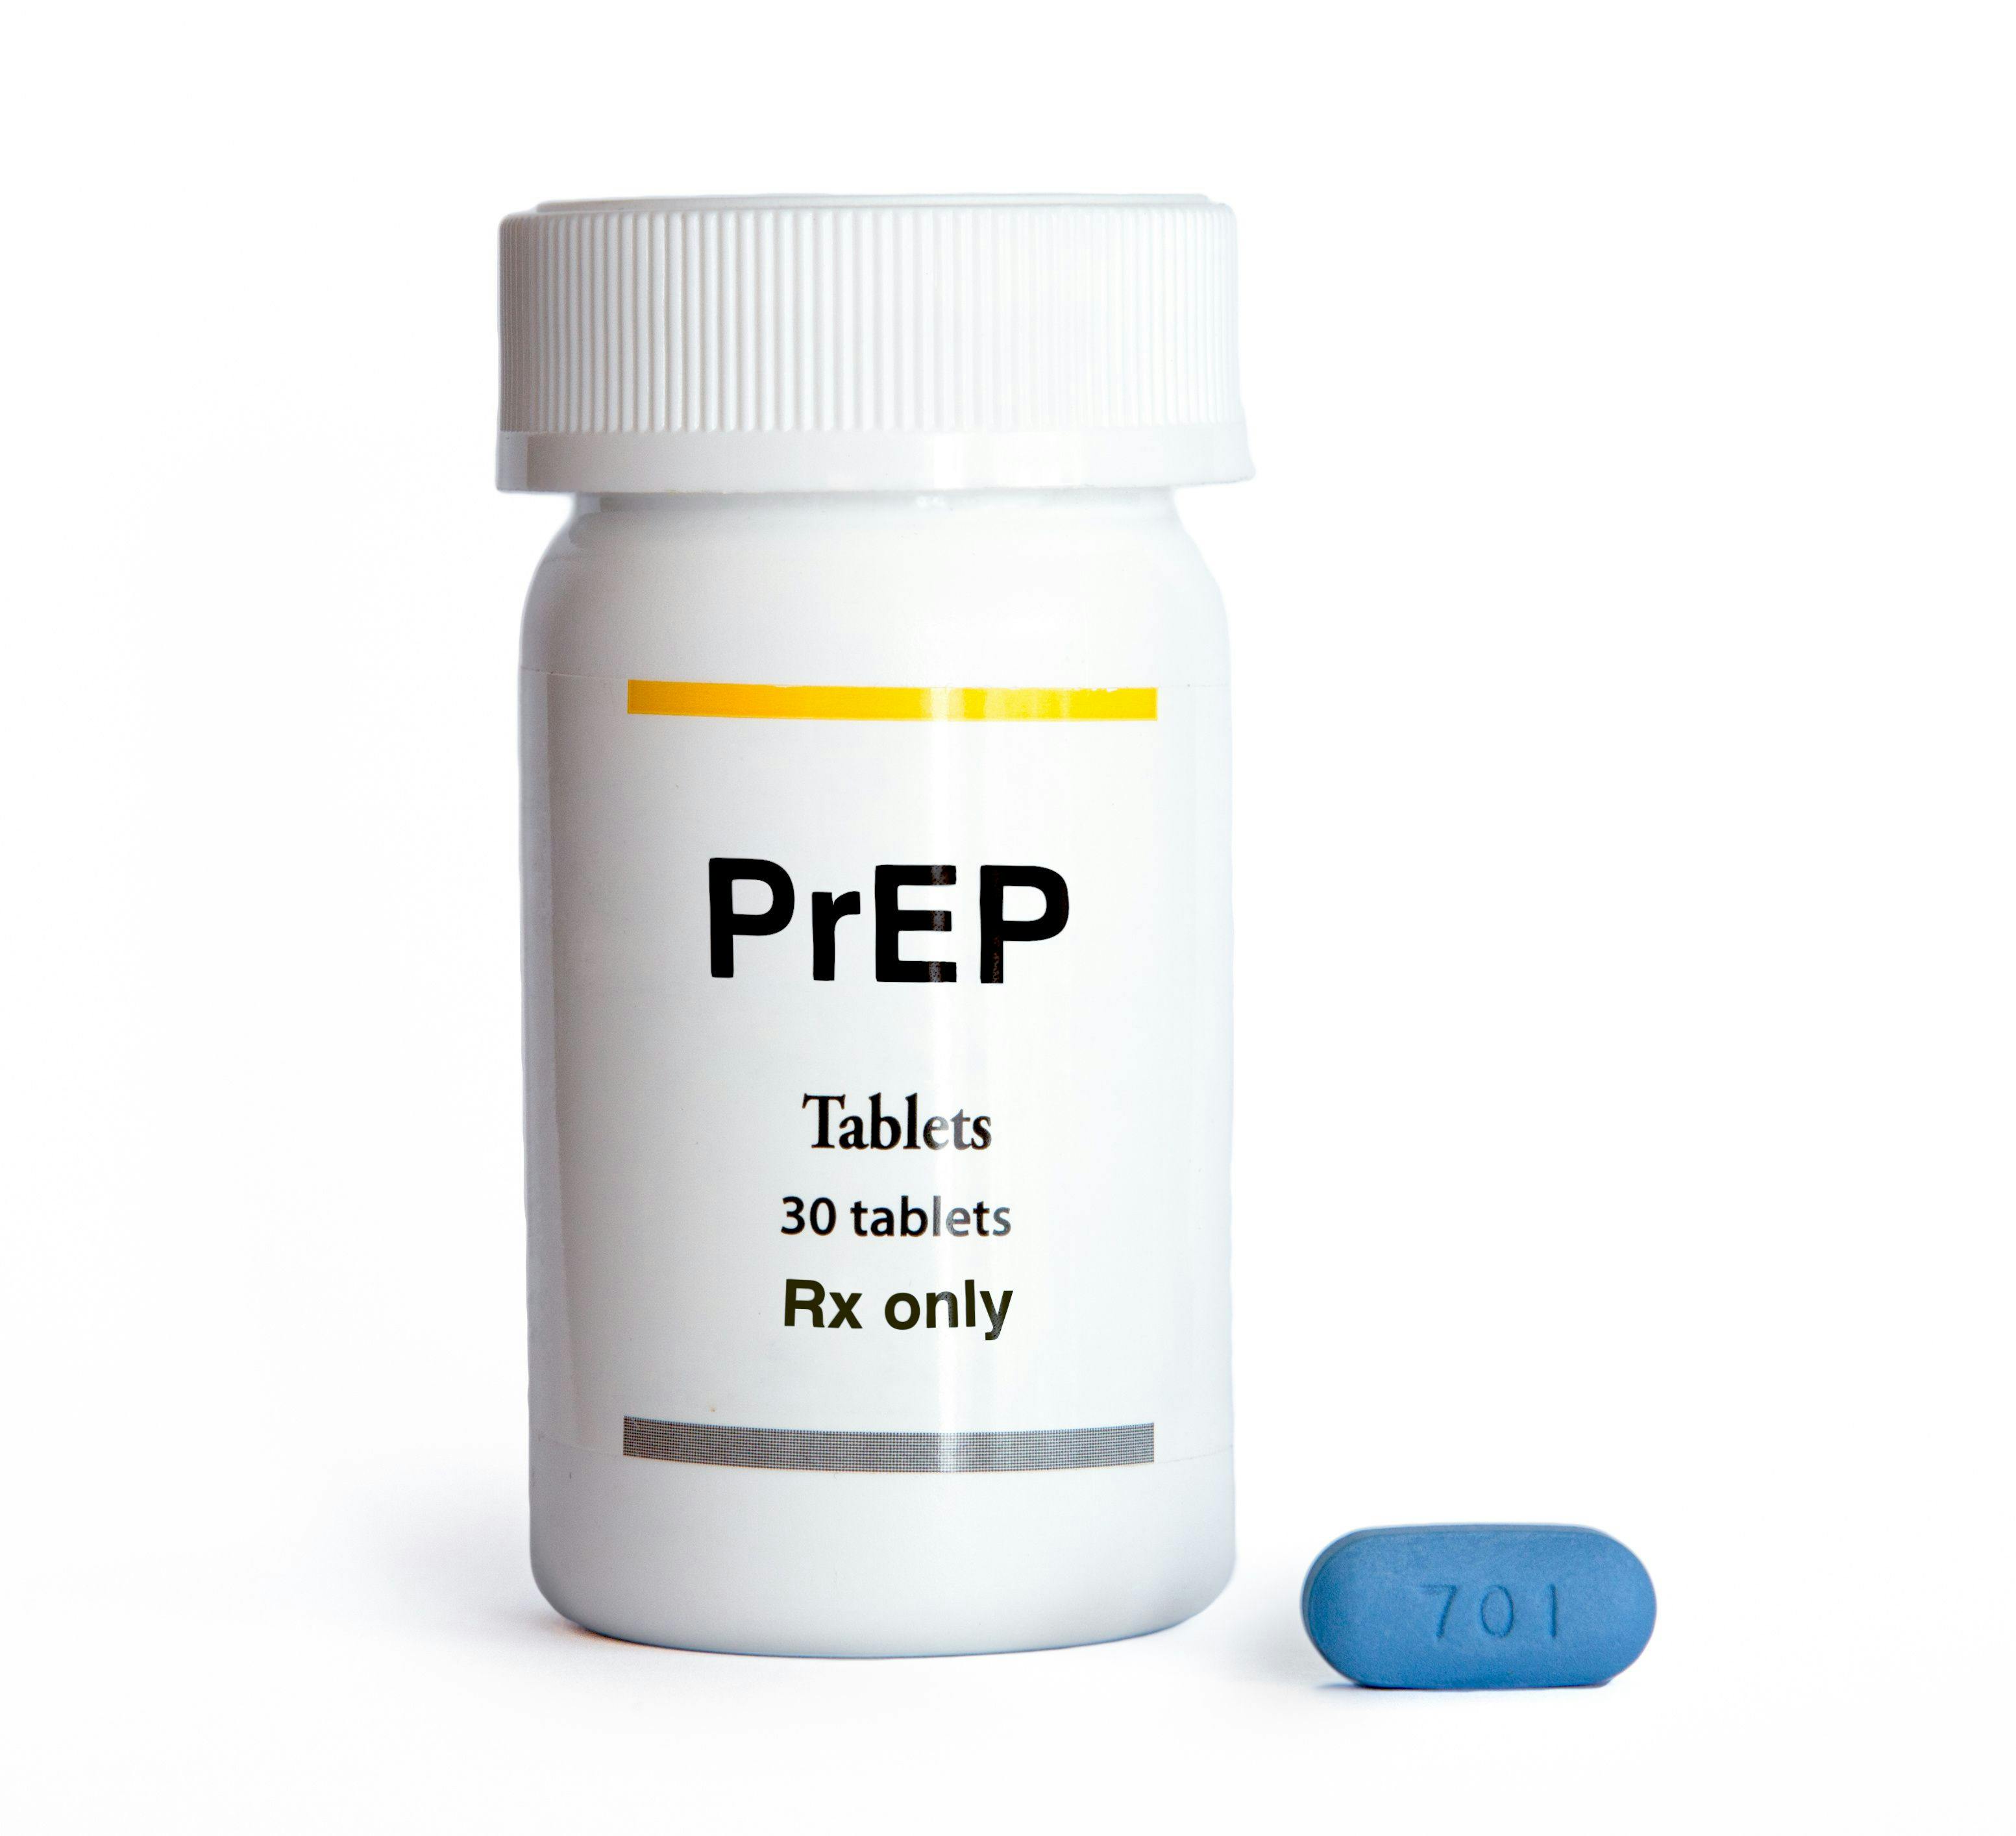 Pre-exposure prophylaxis | Image credit: ulricgiezendanner - stock.adobe.com